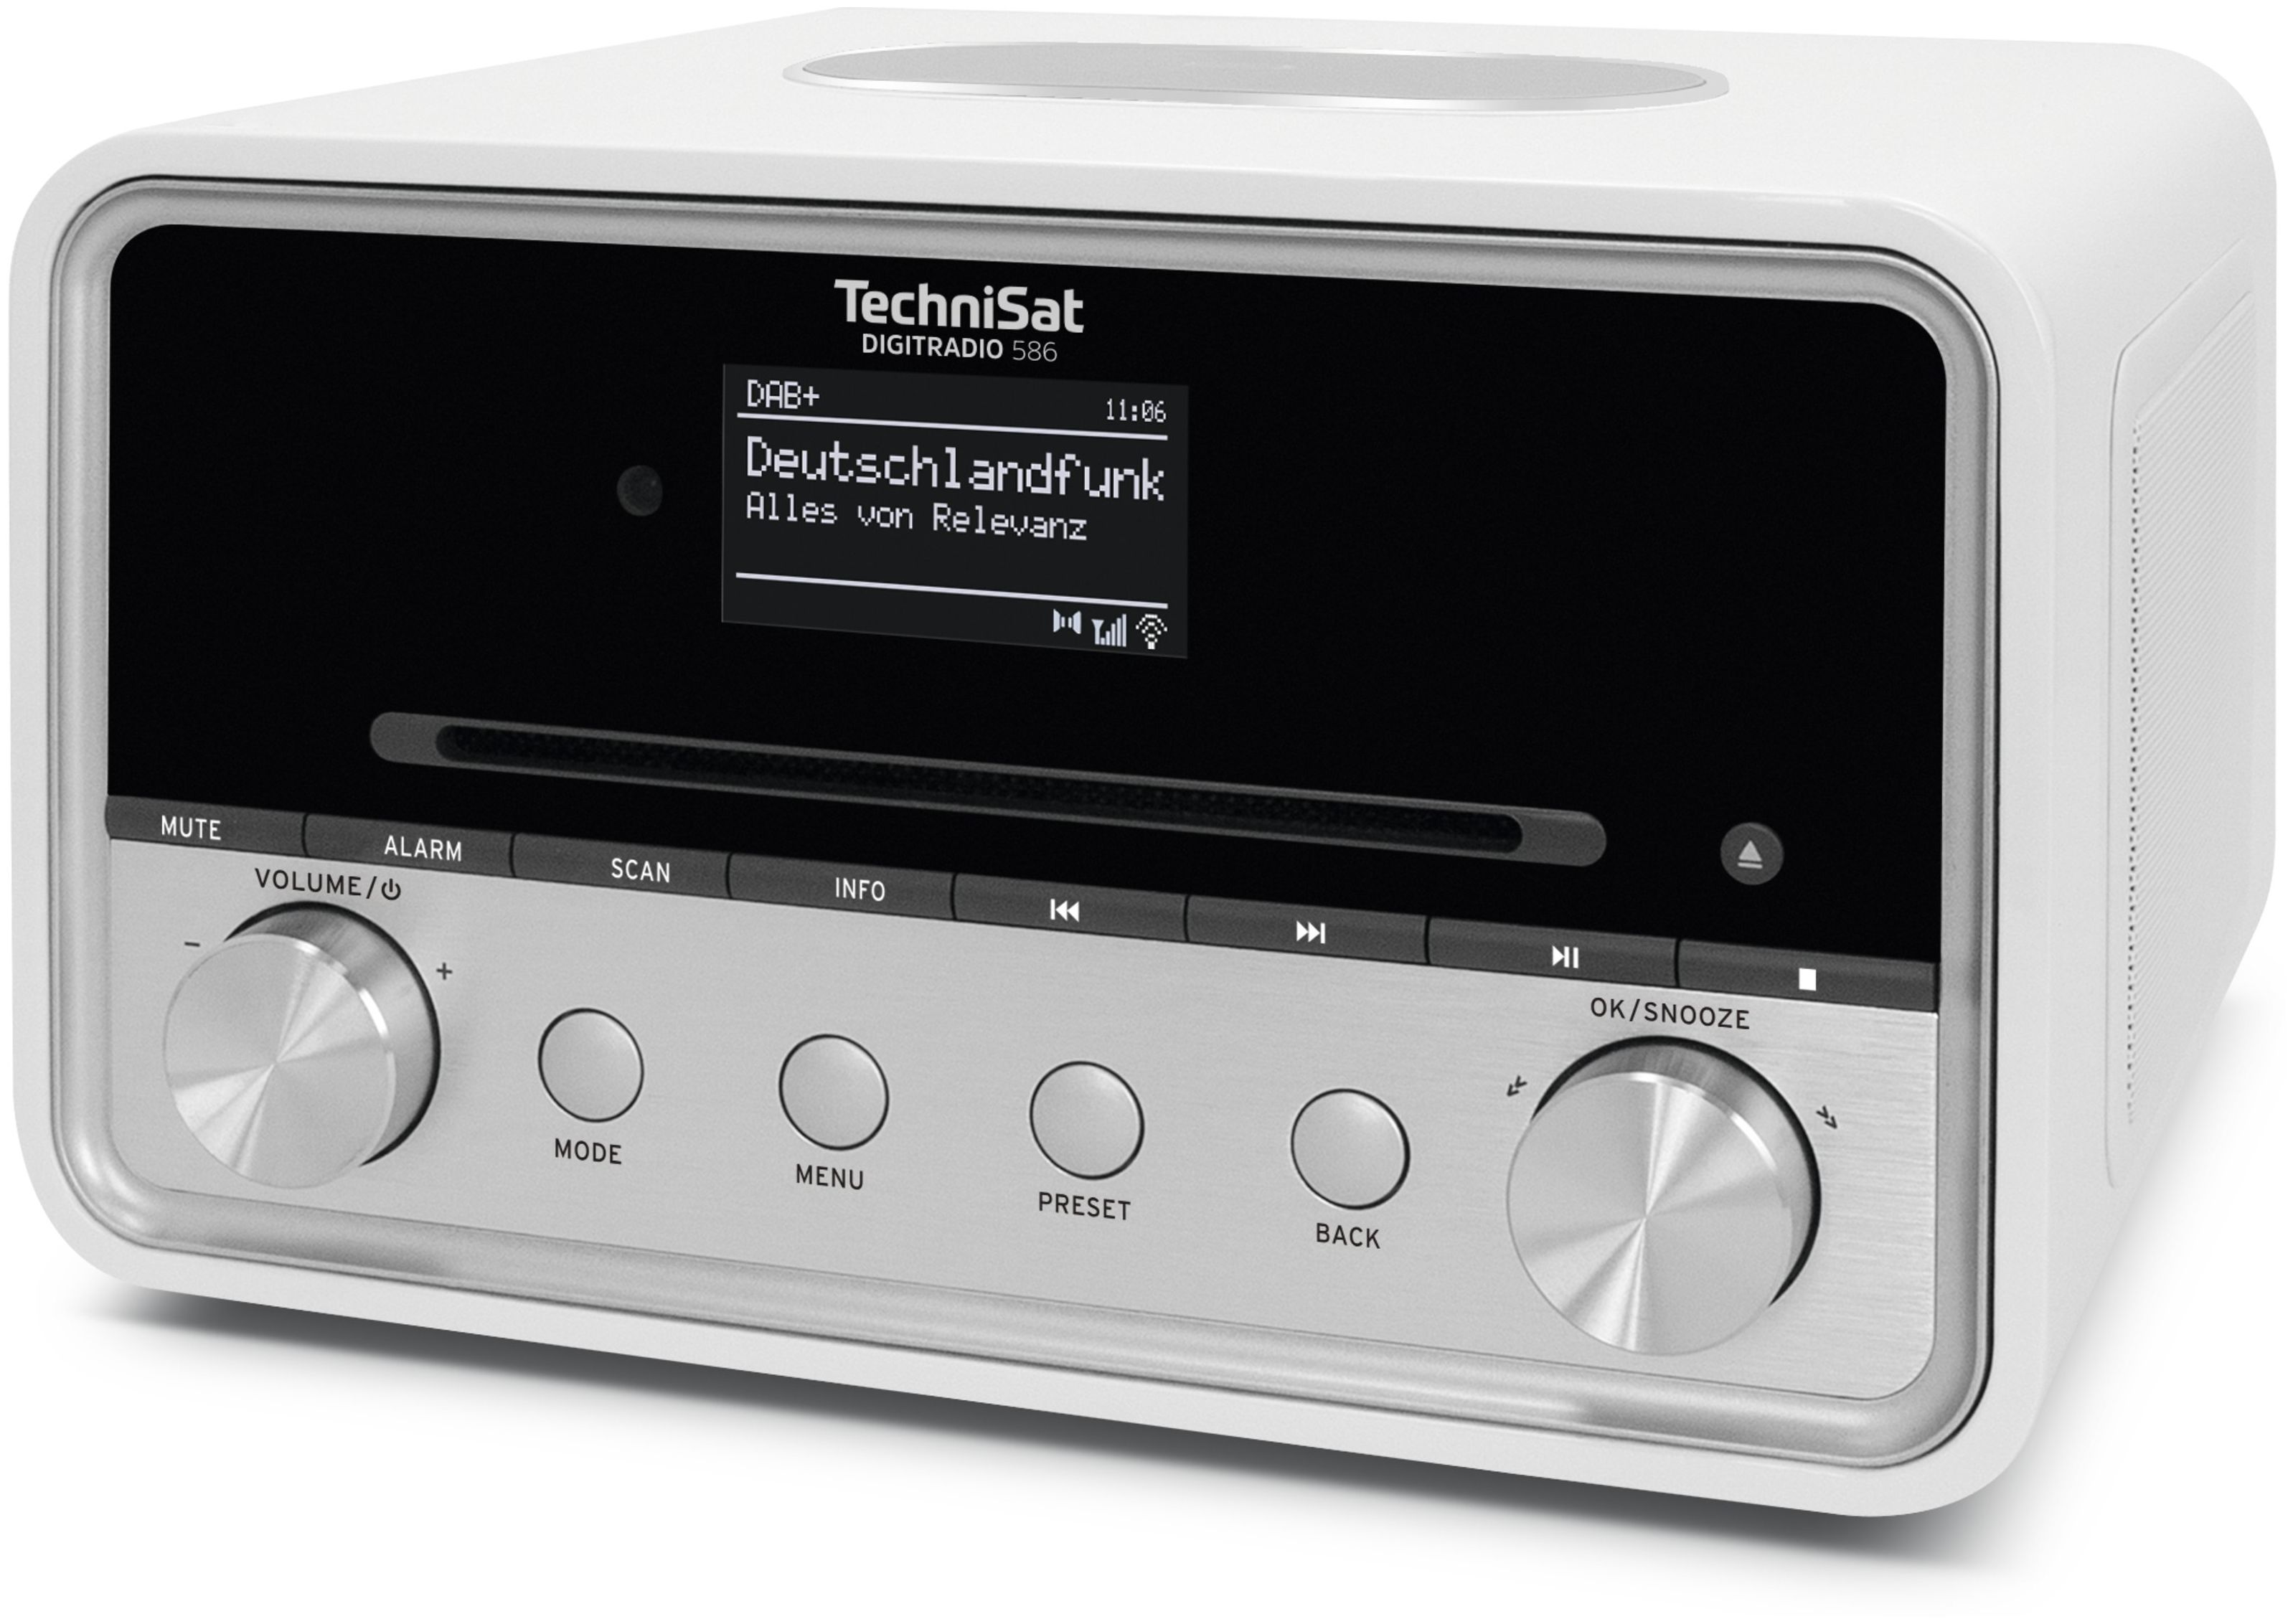 Bluetooth von Radio TechniSat DAB+, expert Technomarkt FM 586 Digitradio (Weiß) Persönlich